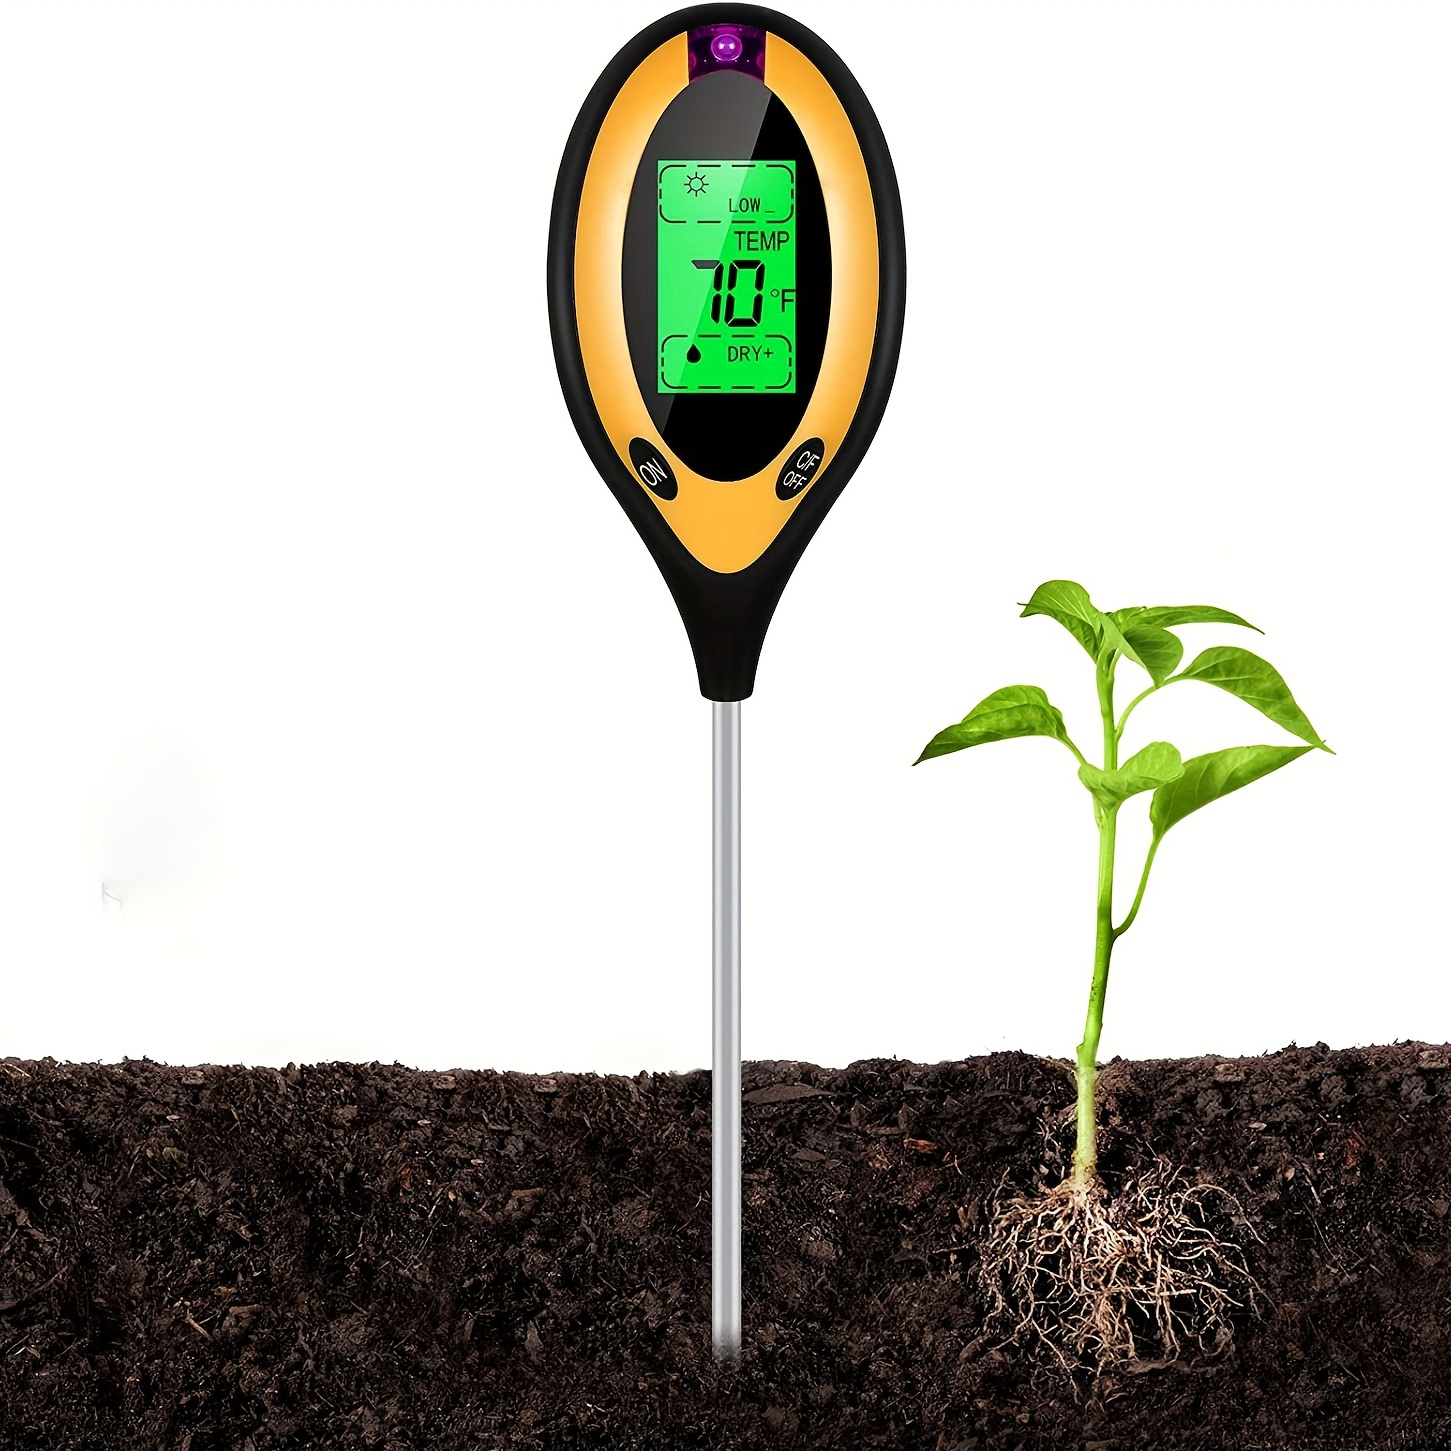 

1pc 4-in-1 Soil Detector Light Temperature Soil Moisture Meter Ph Value Soil Tester, Plant & Soil Monitoring